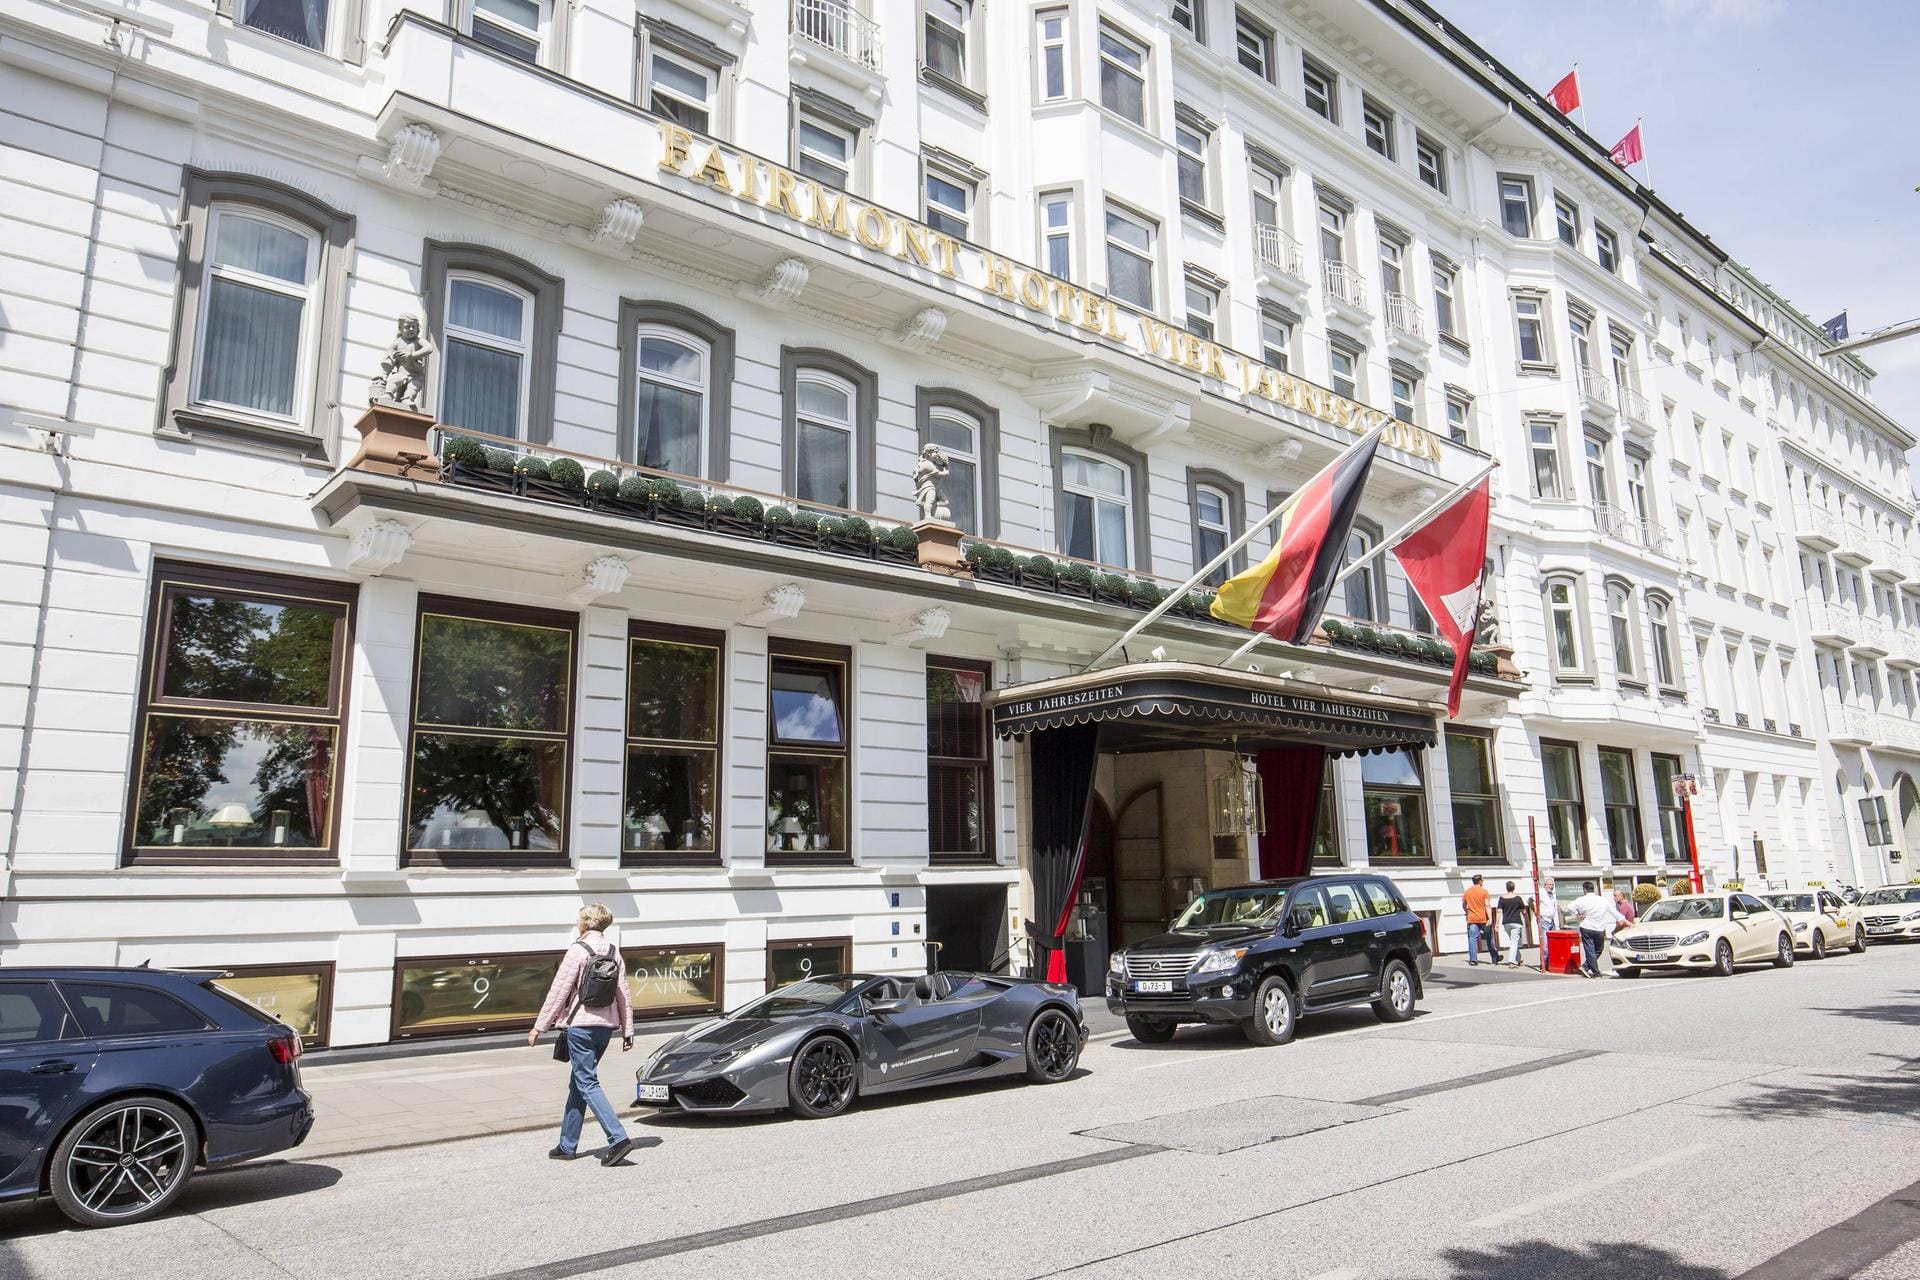 Das Hotel Vier Jahreszeiten in Hamburg. Saudi-Arabiens König Salman sollte hier während des G20-Gipfels übernachten.